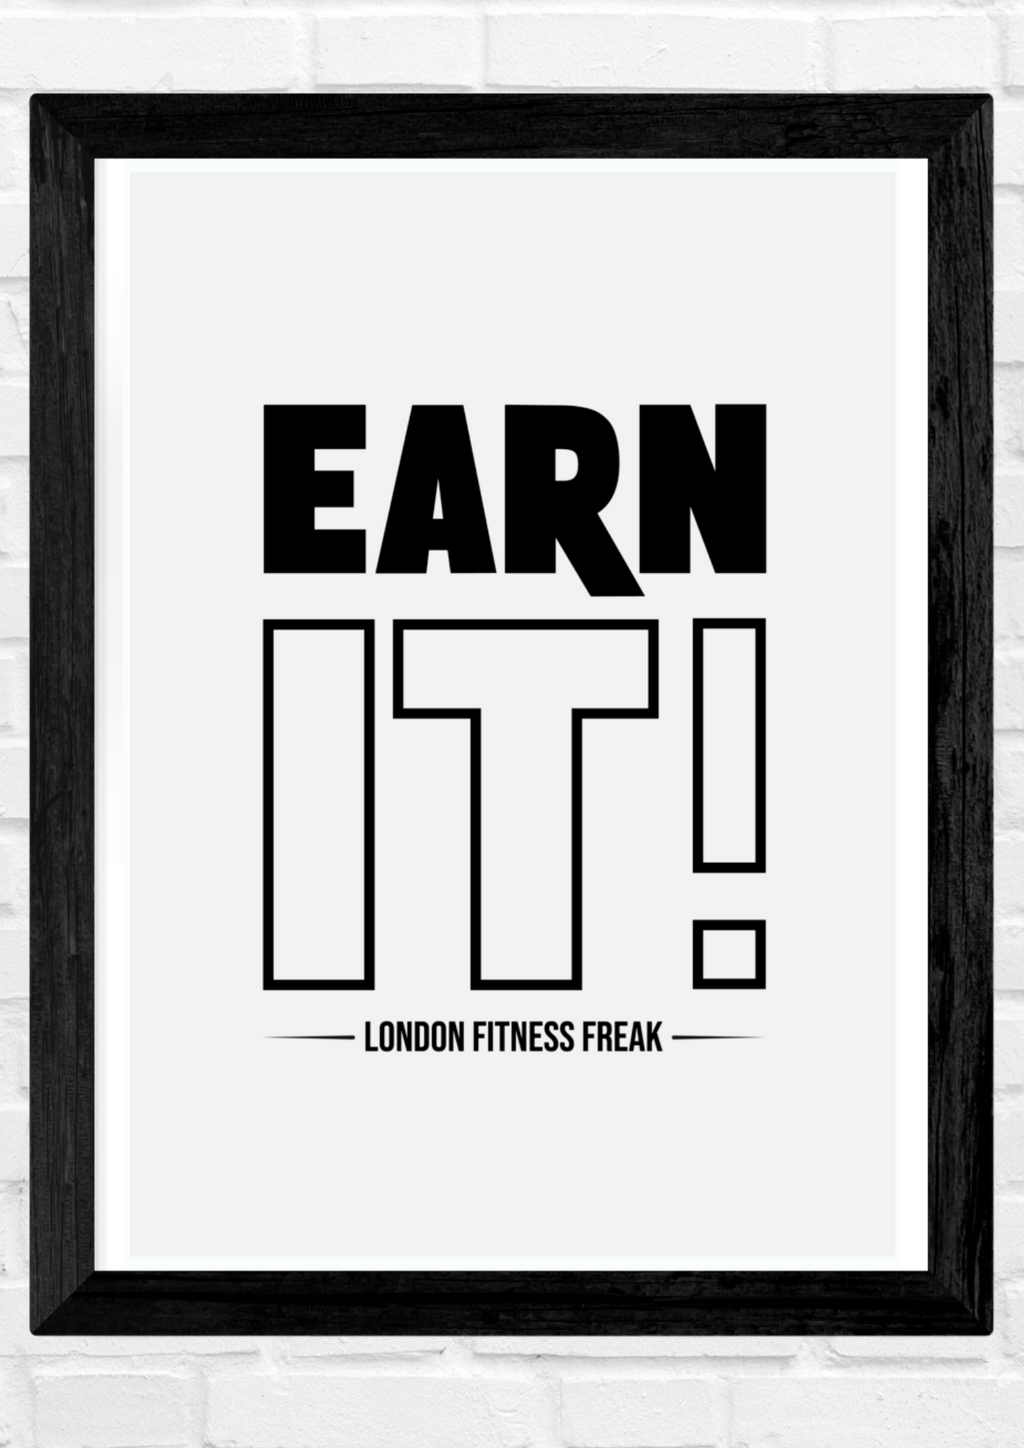 London Fitness Freak